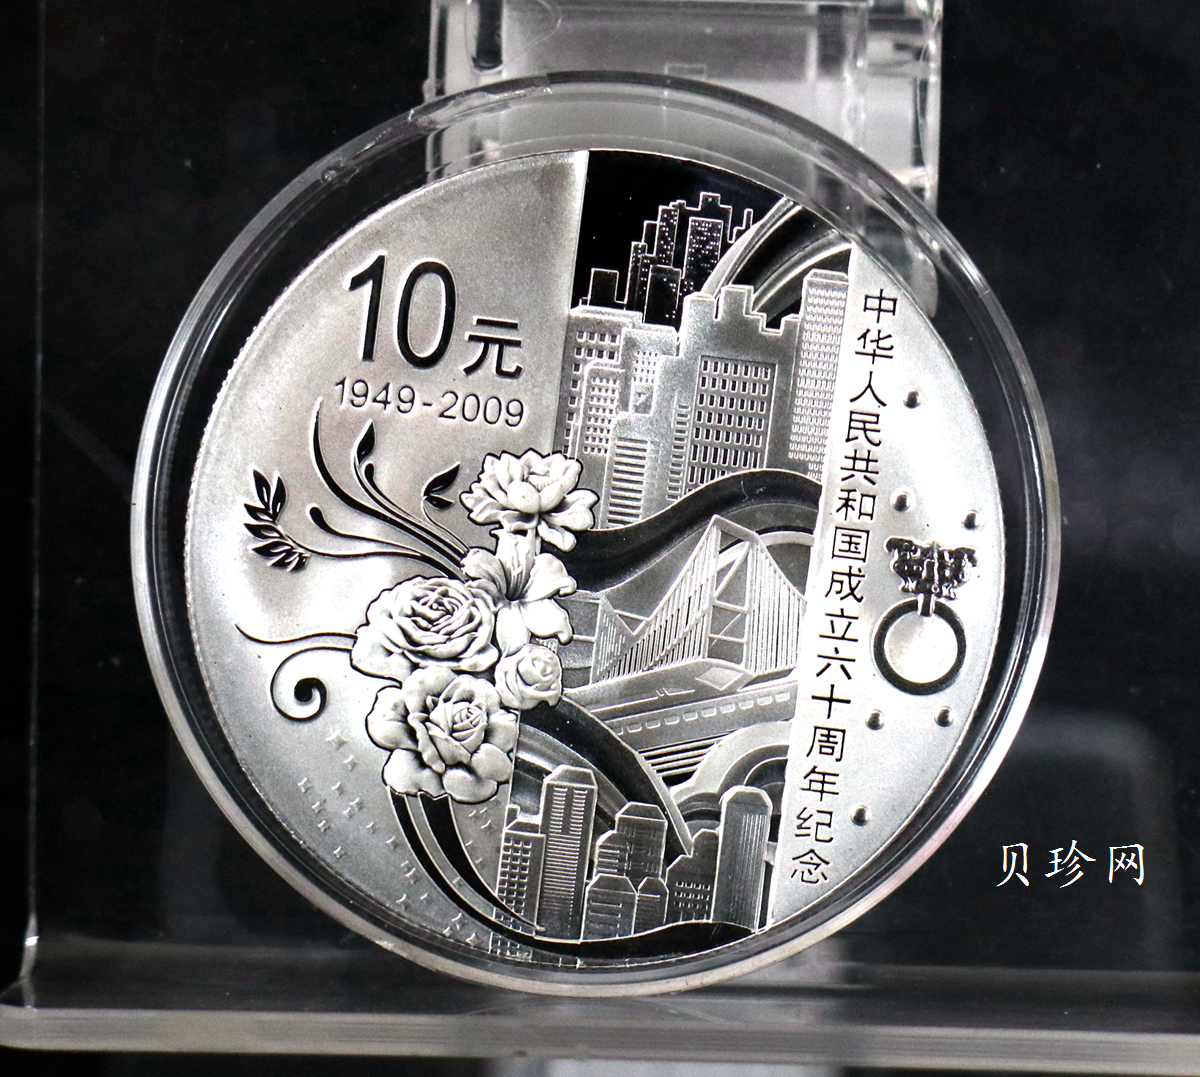 【090605】2009年中华人民共和国成立60周年1盎司精制银币